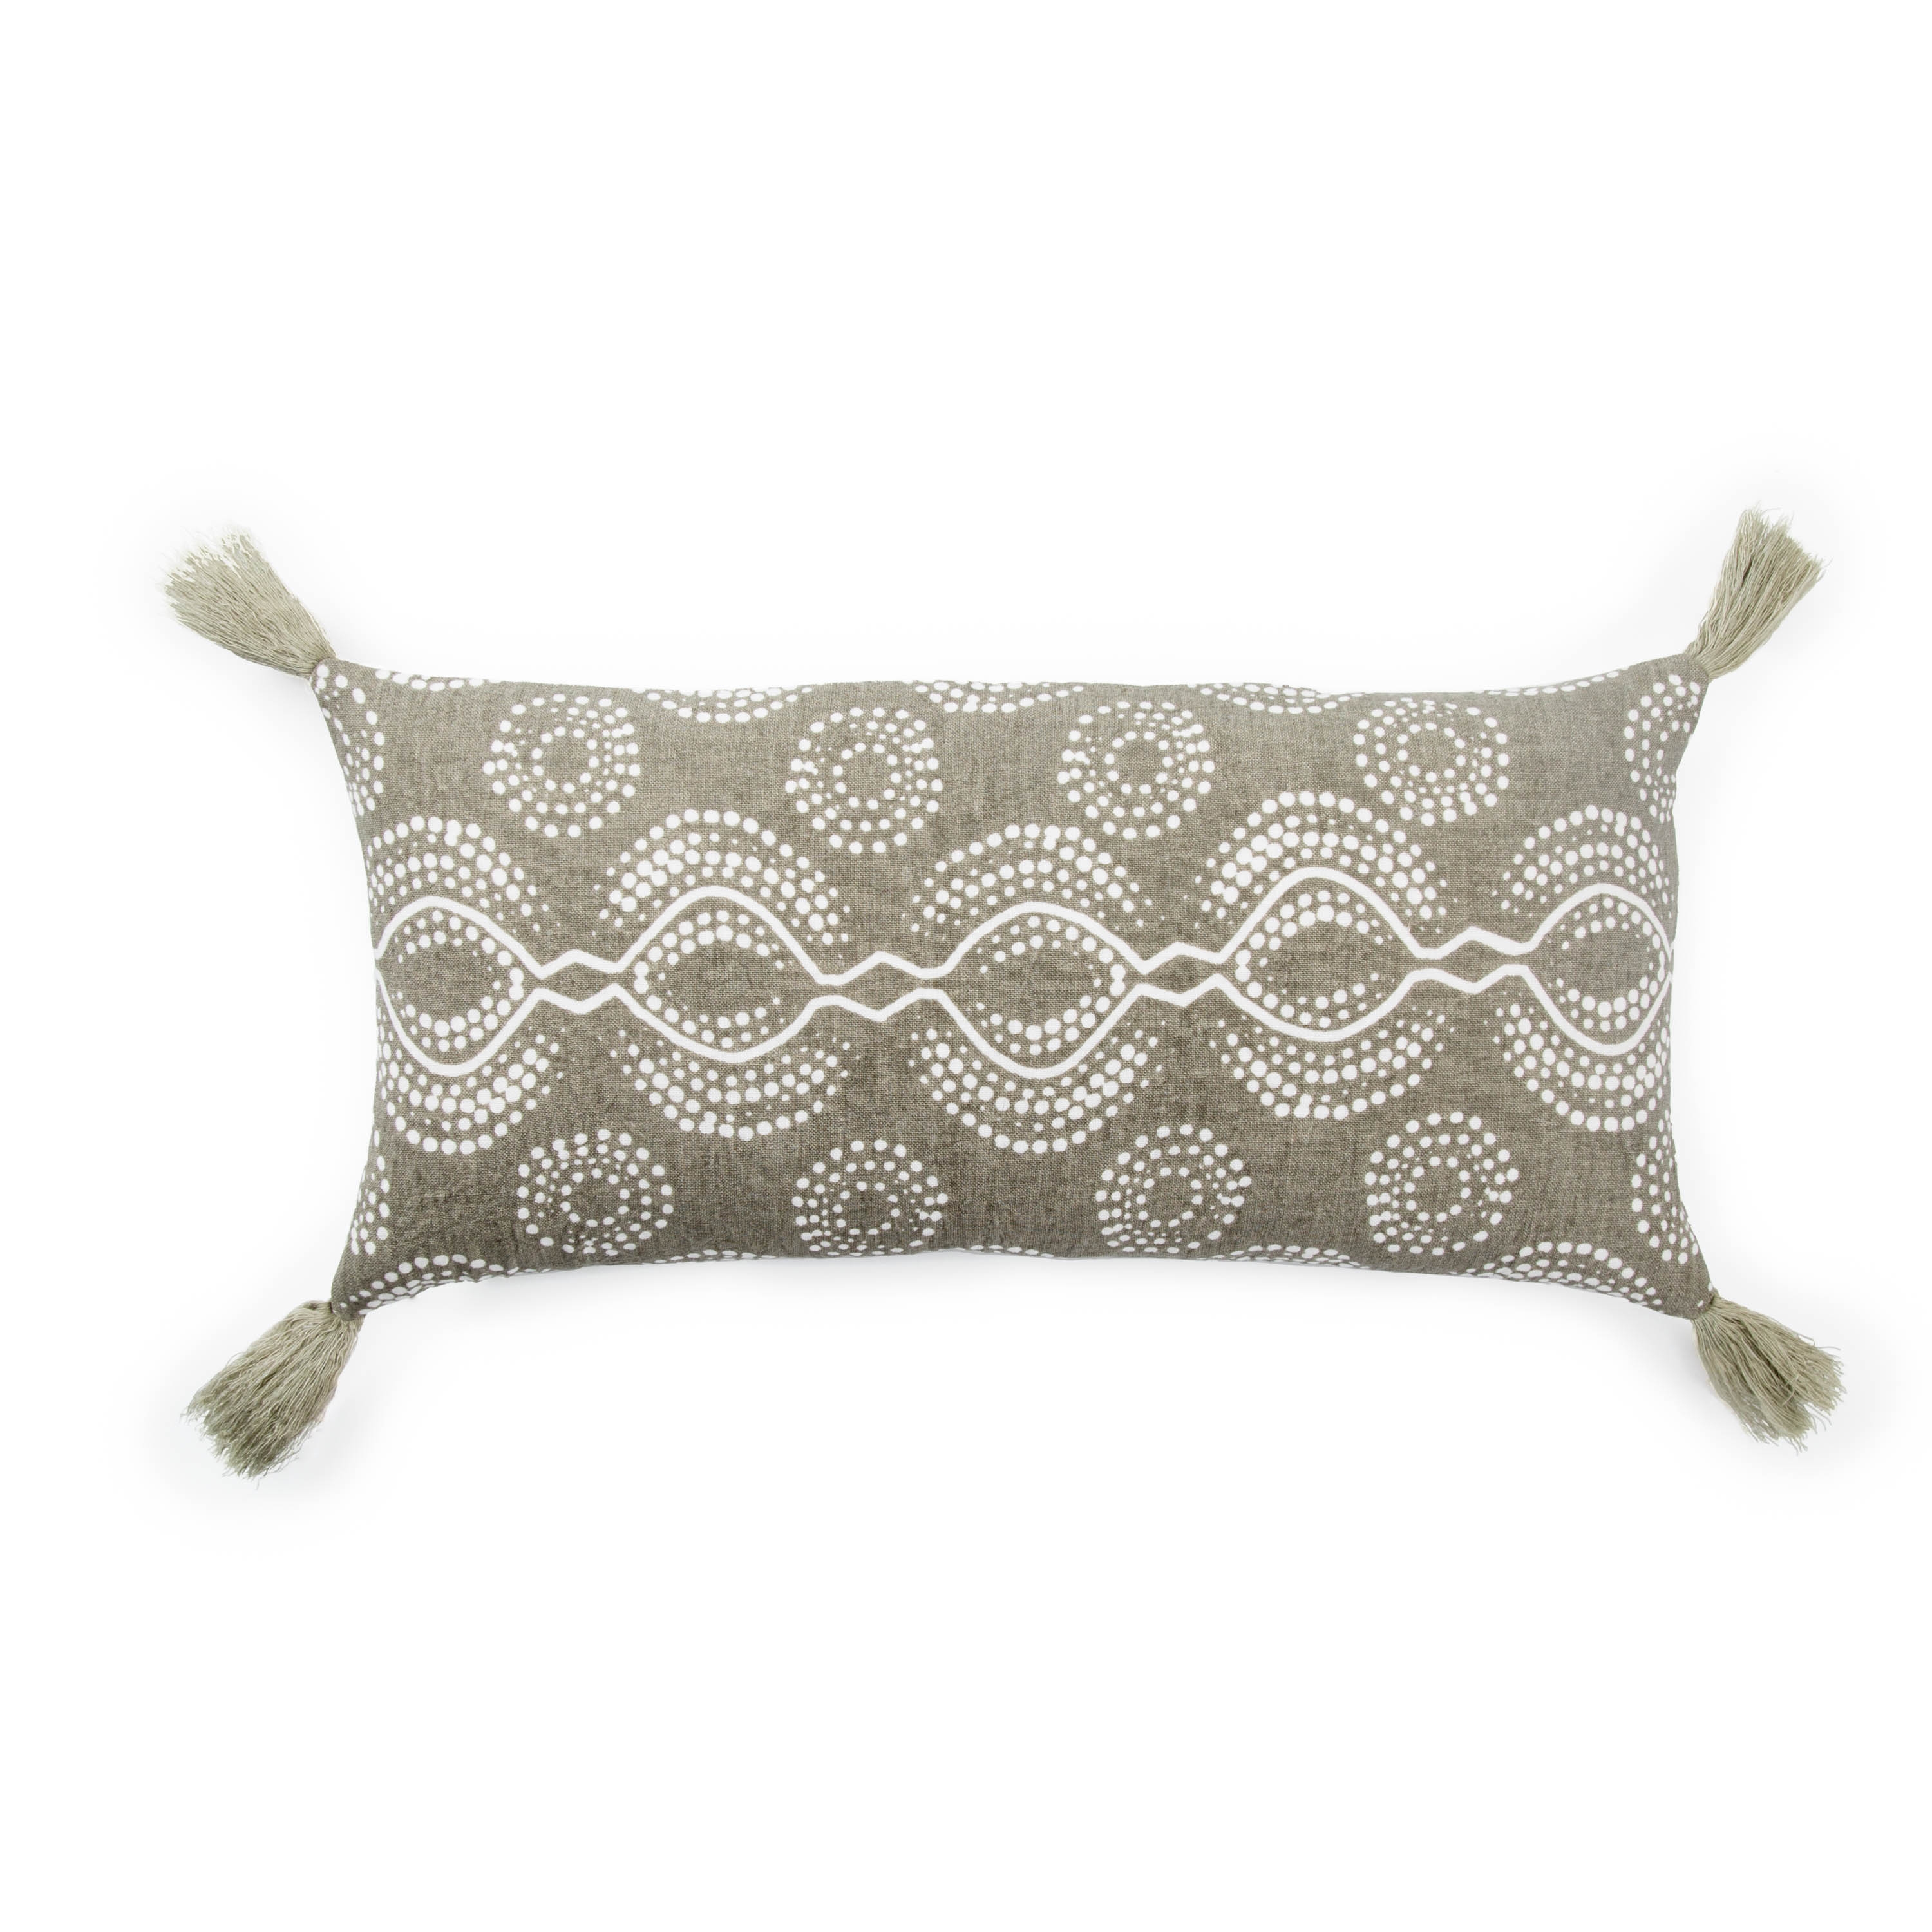 Makenzie Lumbar Pillow, 21" x 10", Taupe - DISCONTINUED - Image 0